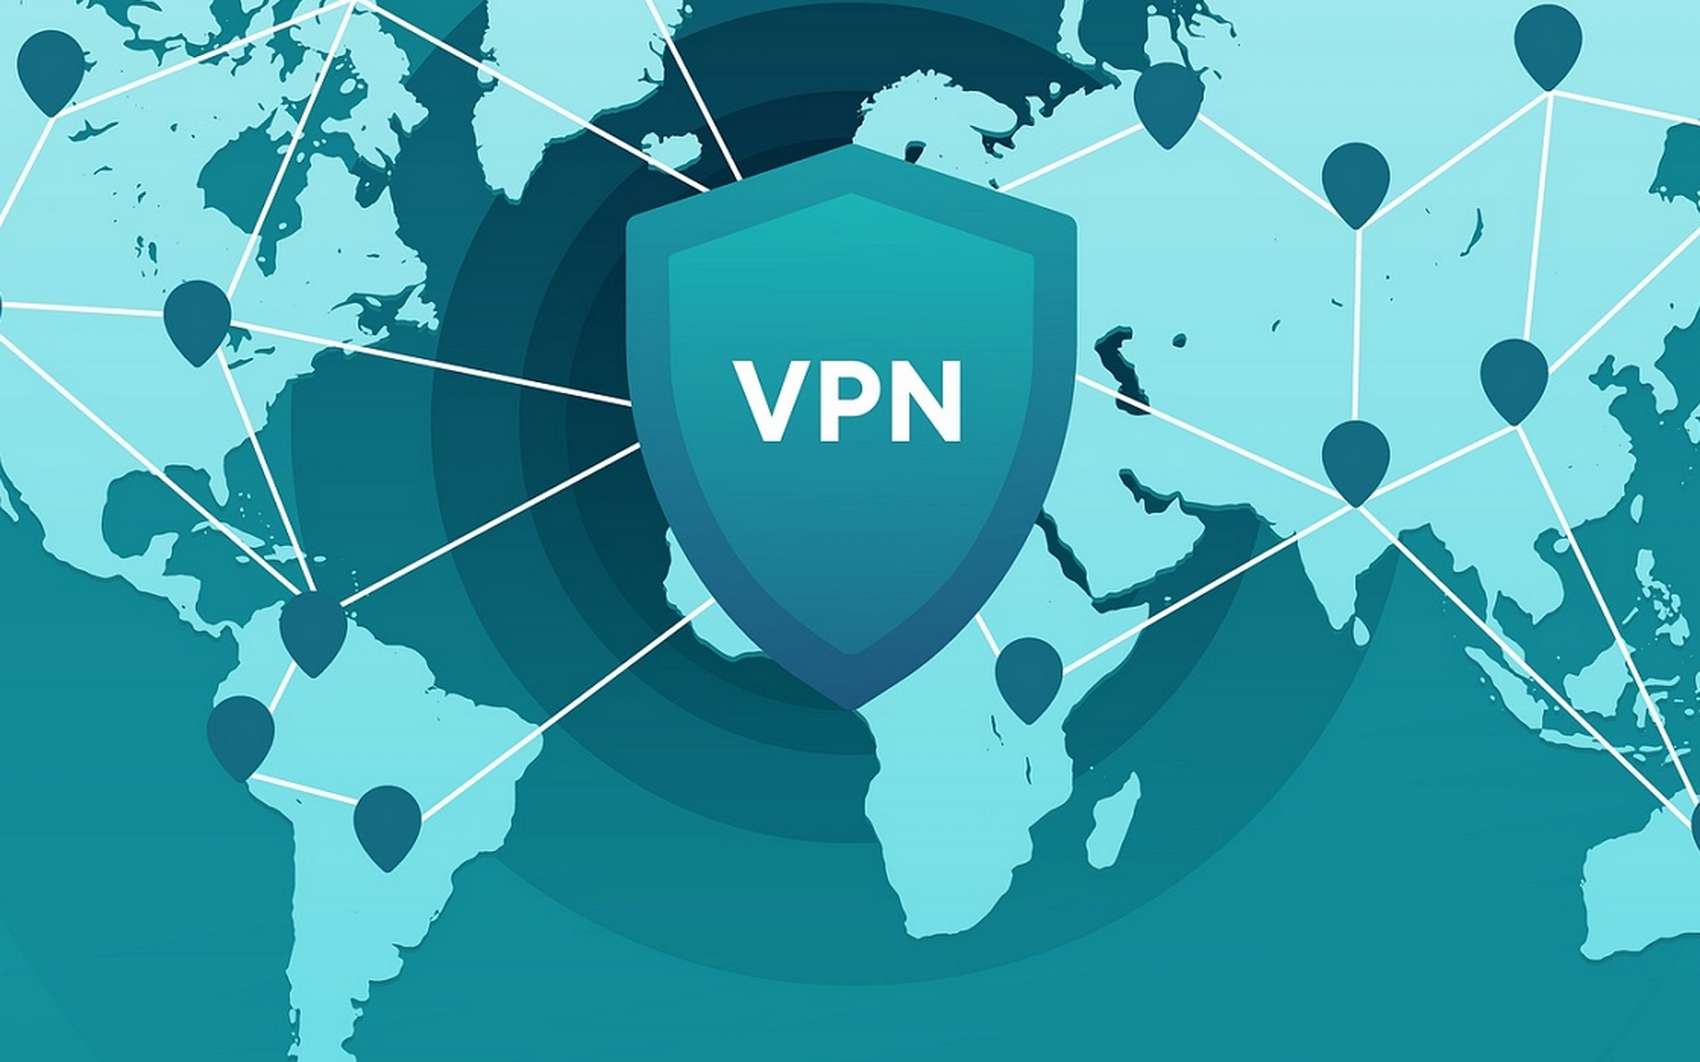 1-VPN-obespechivayut-bystryj-i-bezopasnyj-internet.jpeg